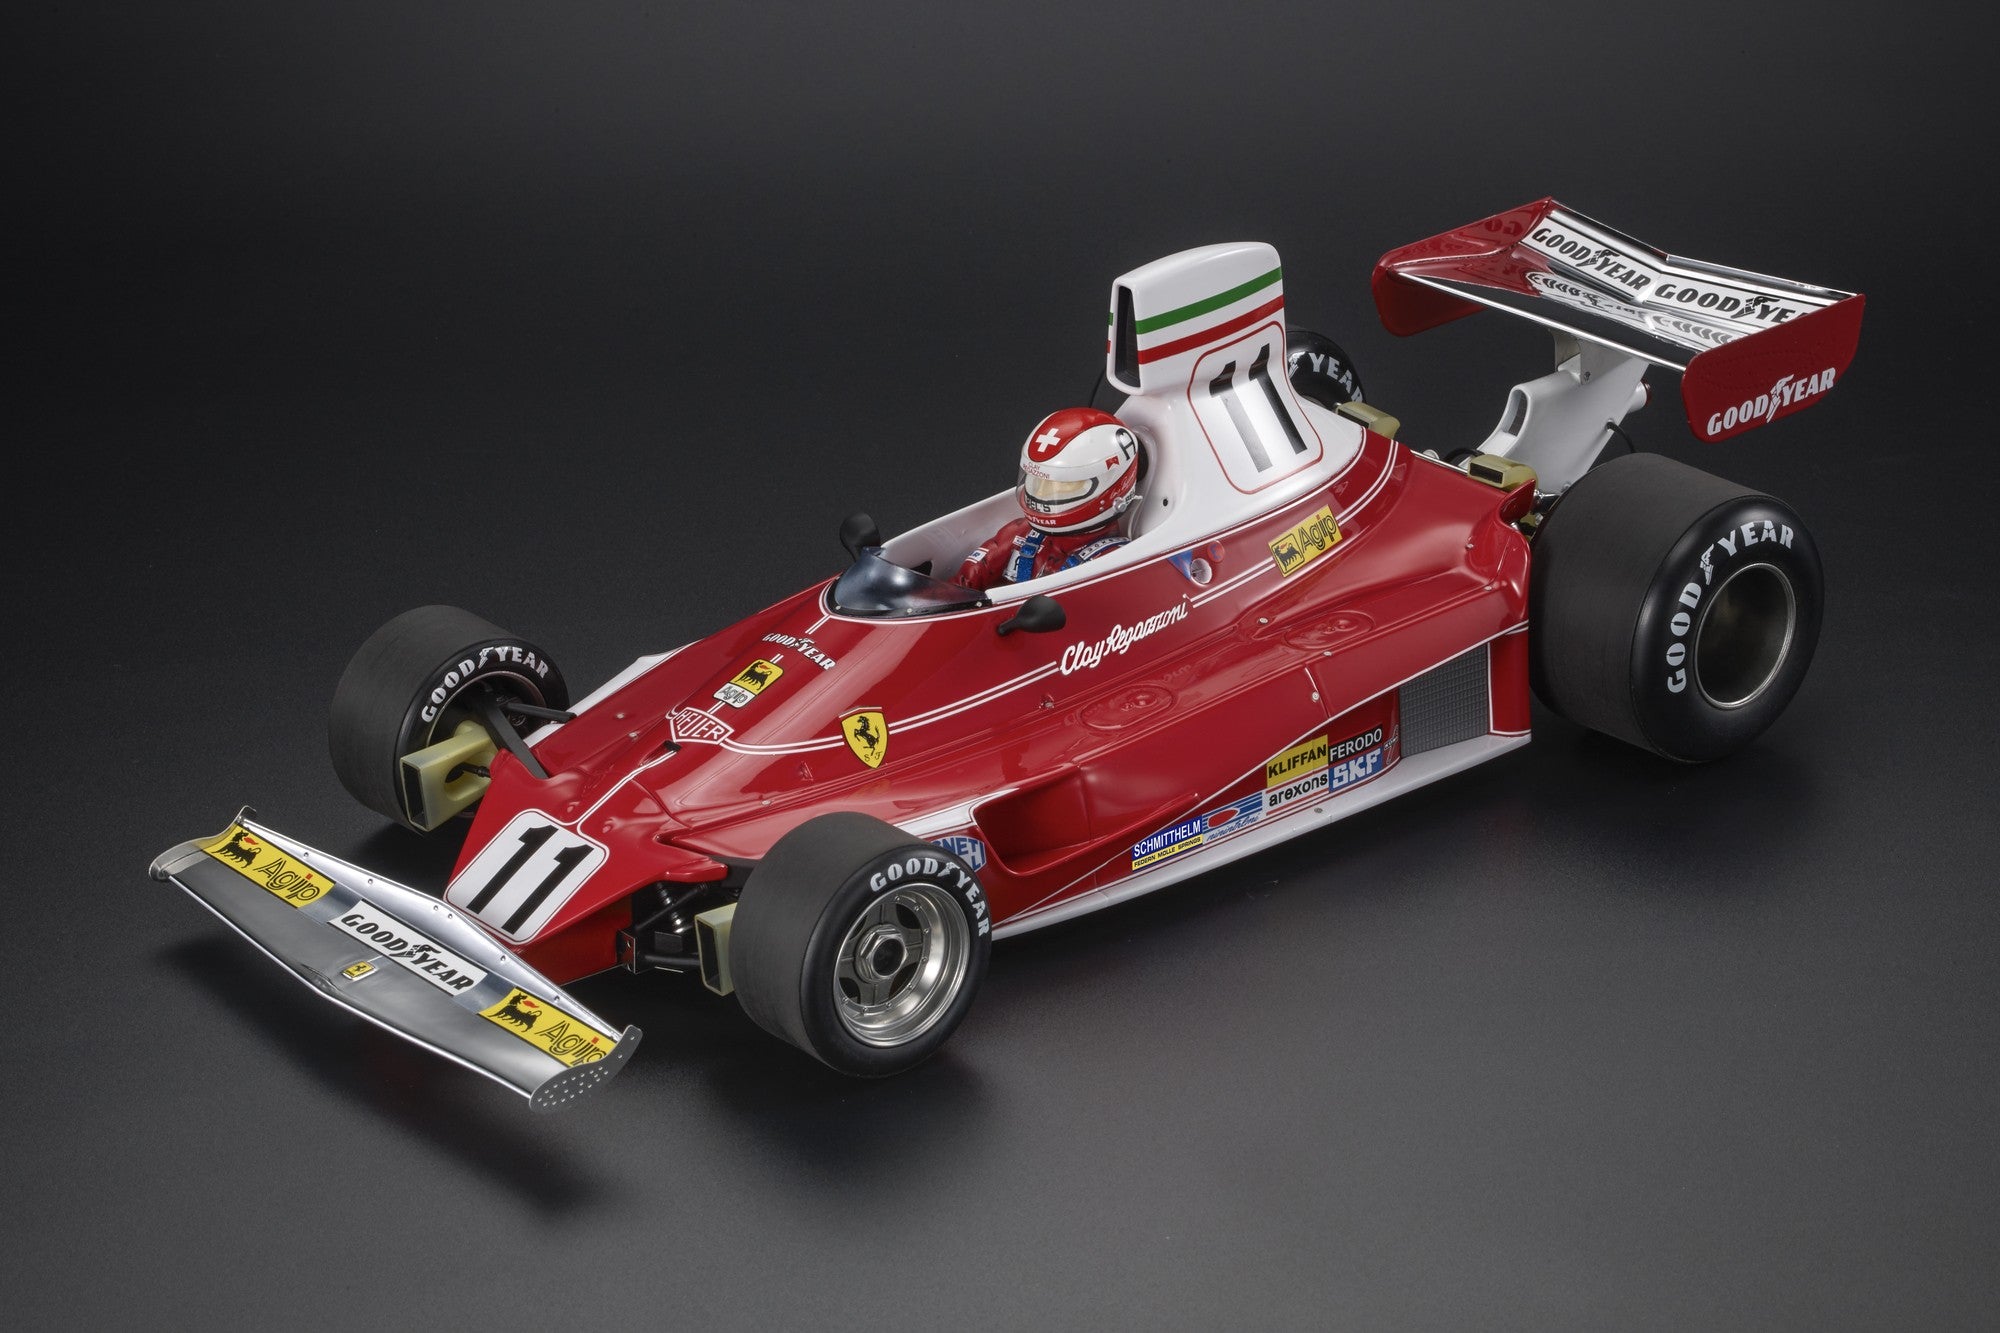 Ferrari - 312T n.11 (1975) 1:12 - Clay Regazzoni - Winner Italy GP - W